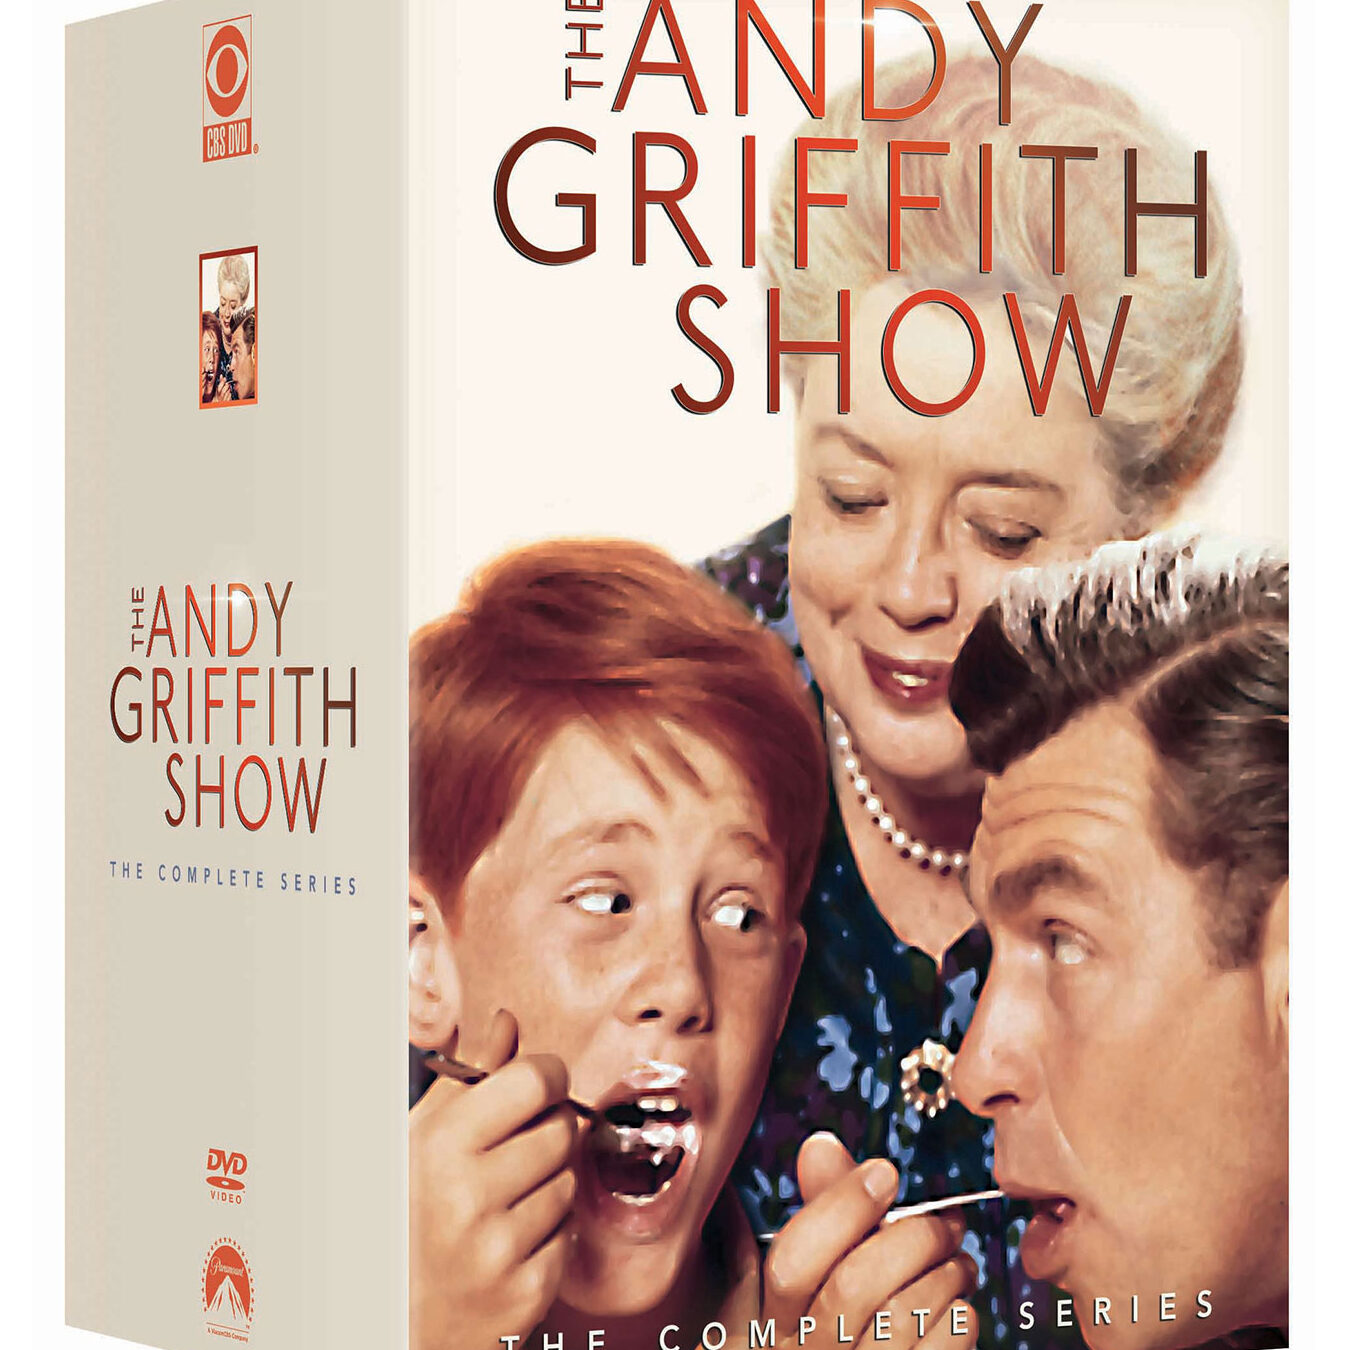 Amazon.com: El show de Andy Griffith: La serie completa: Andy ...